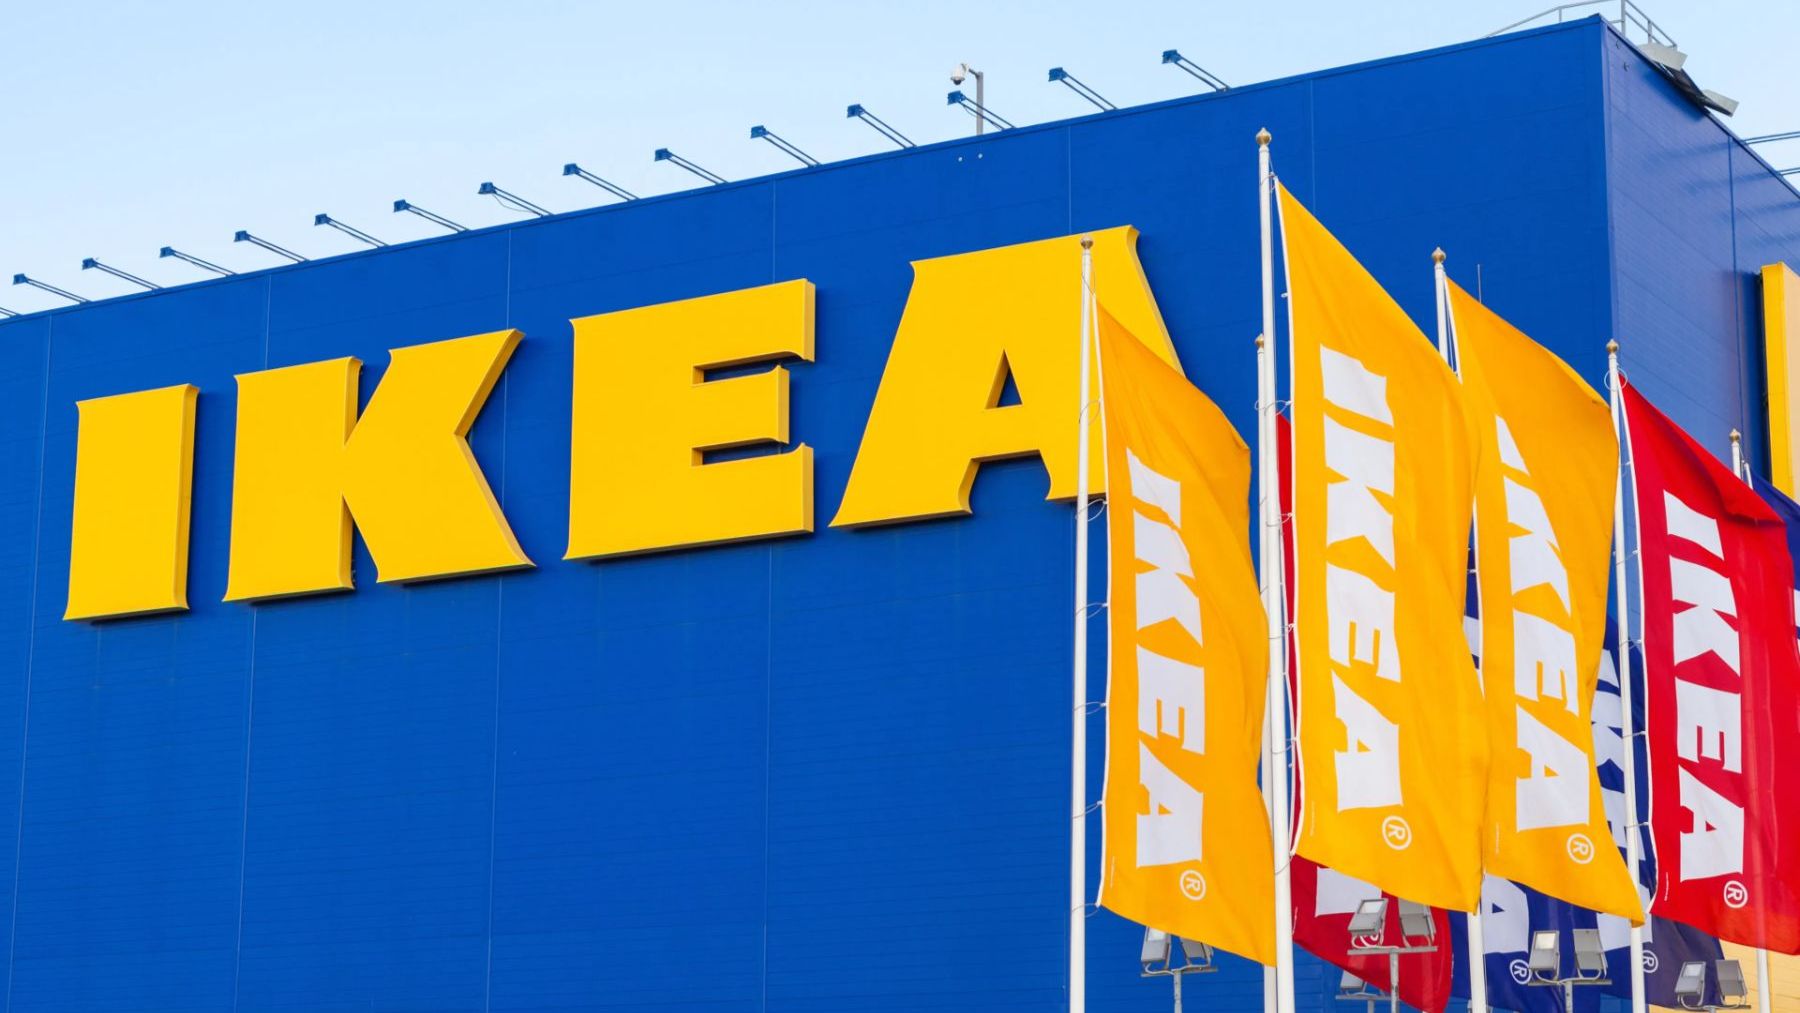 Descubre los productos esenciales de Ikea por solo 1 euro